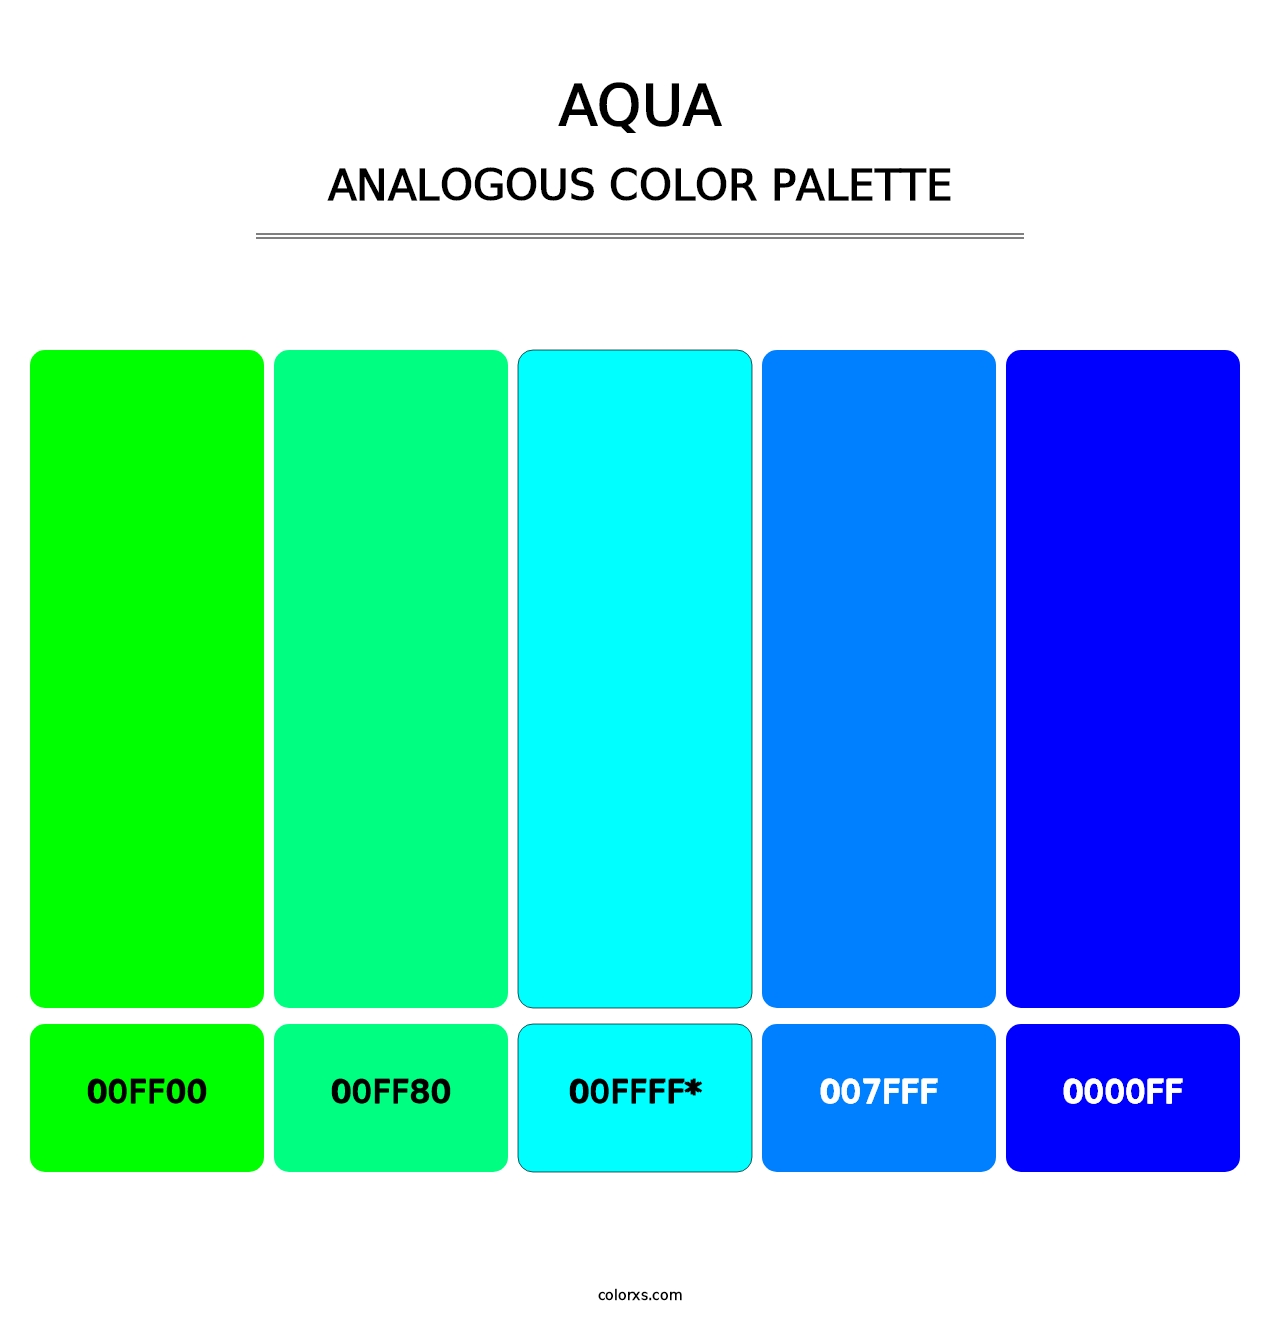 Aqua - Analogous Color Palette